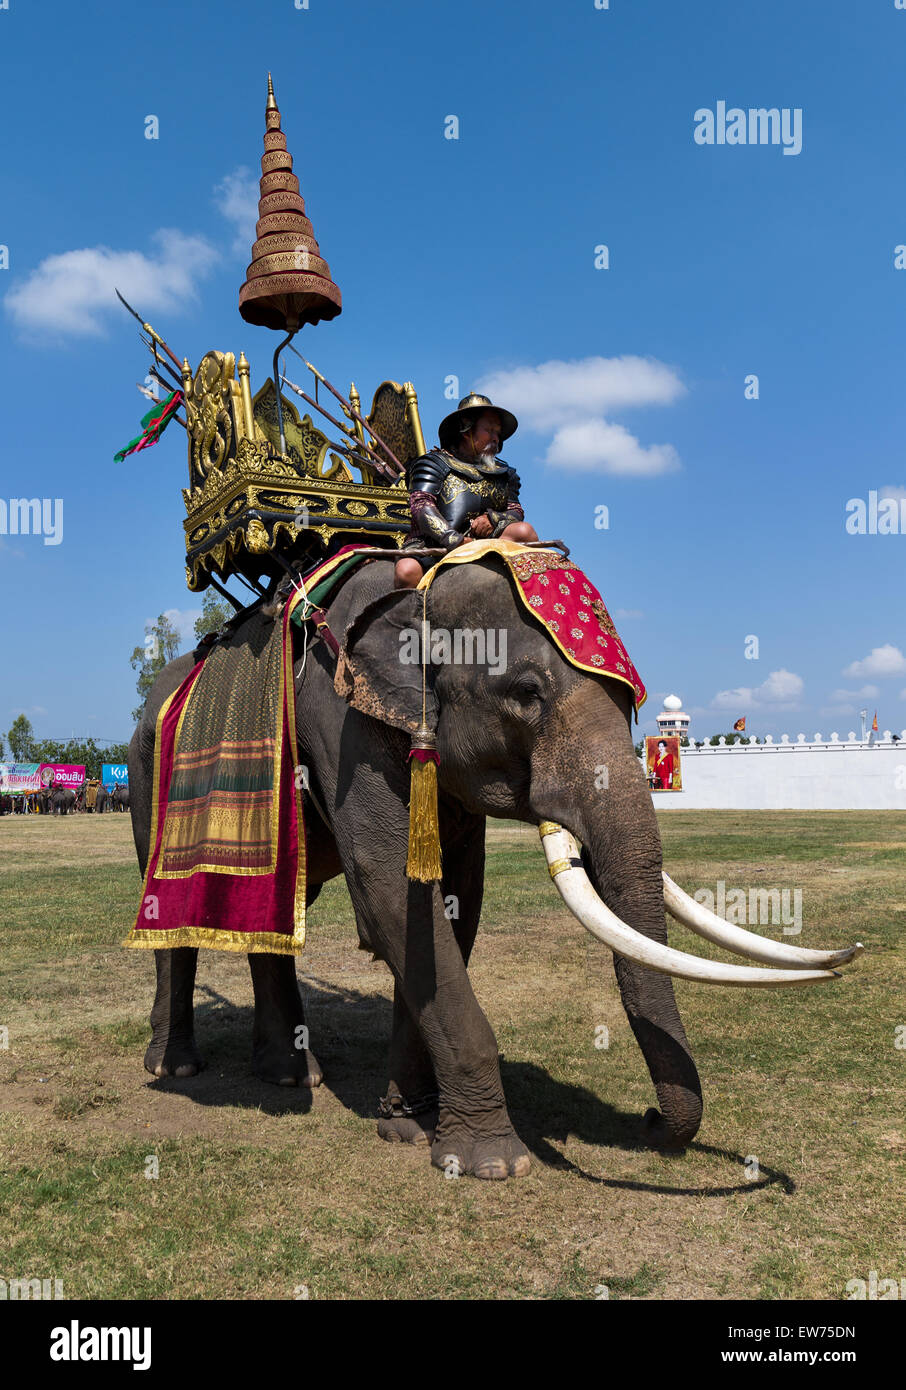 Krieg der Elefant mit Soldaten, historische Kostüme, Elephant Festival, Elephant Round Up, Surin, Surin Provinz Isaan, Isaan, Thailand Stockfoto